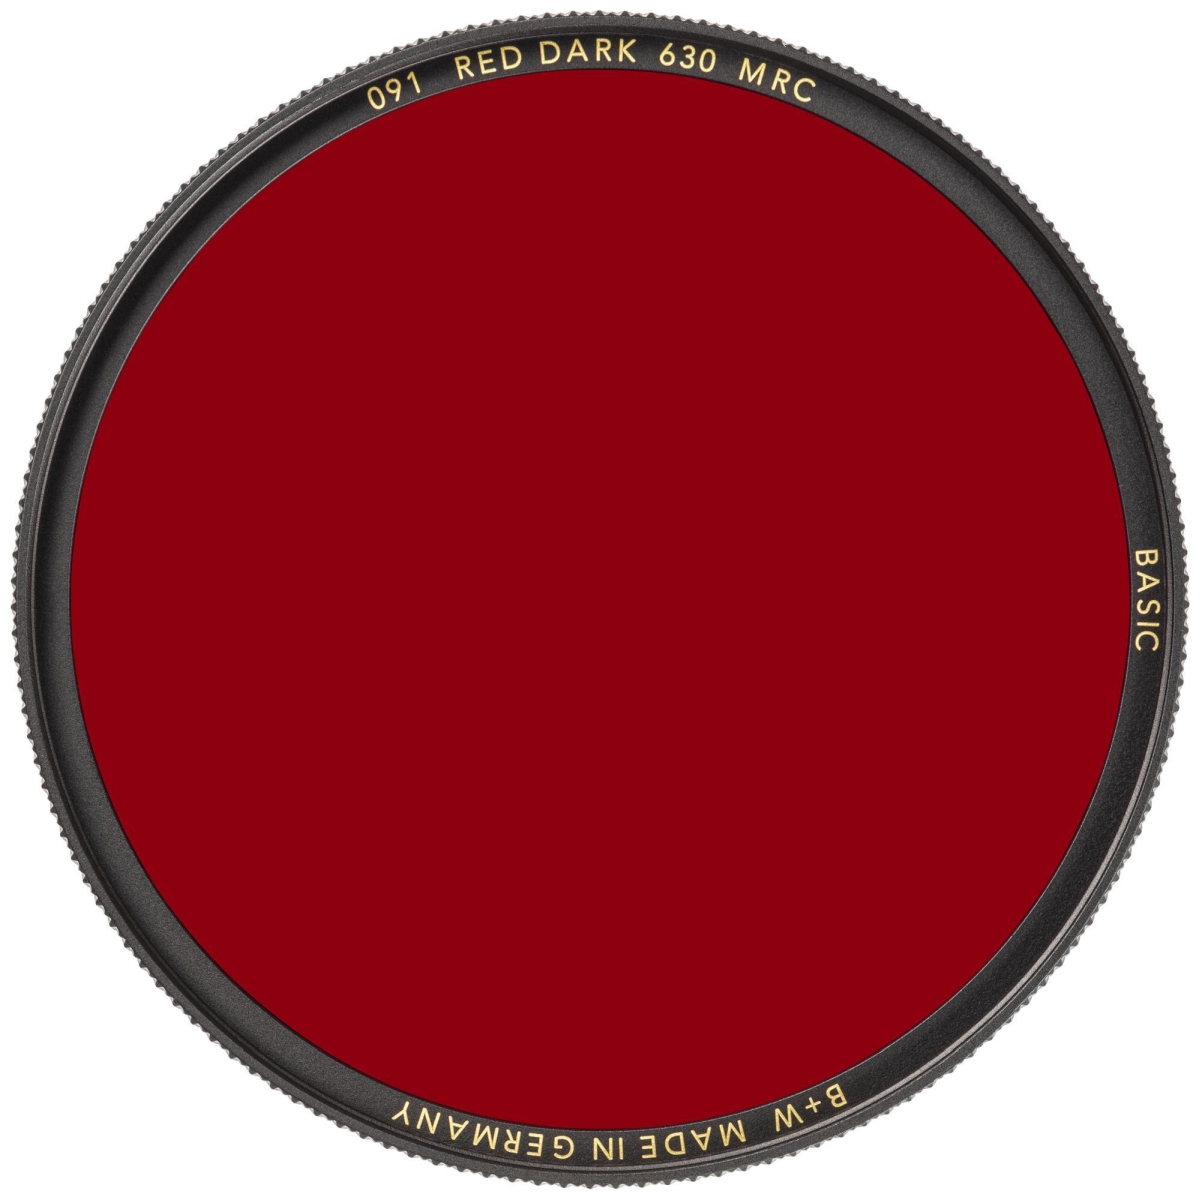 B+W Rot Dunkel 46 mm 630 MRC Basic